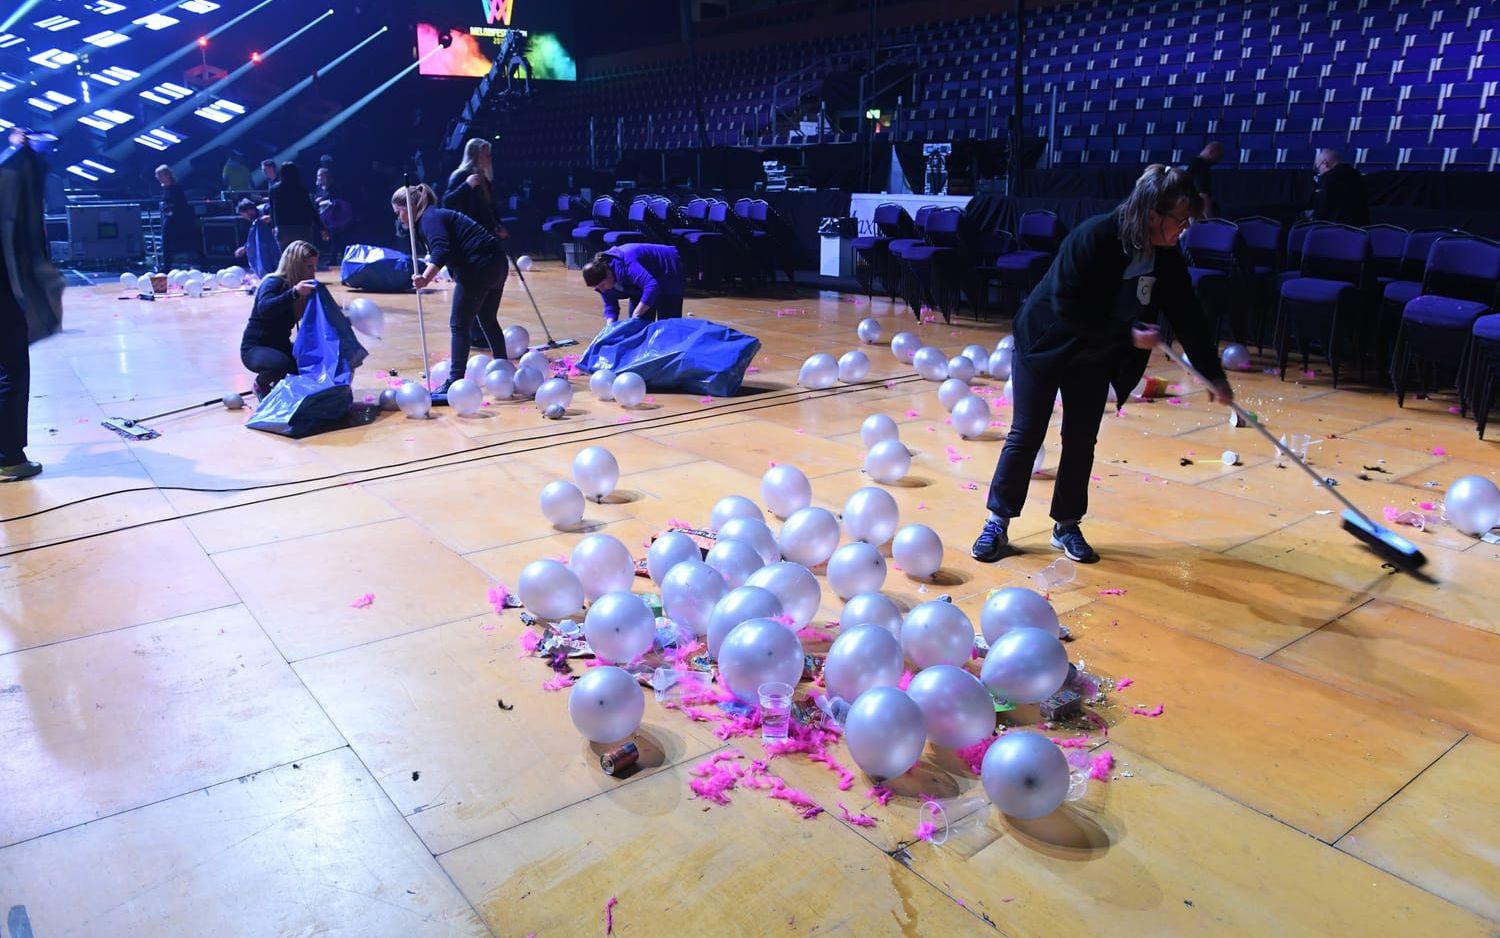 Festen är över och publiken har gått hem. Städpersonalen sopar ihop ballonger och konfetti efter lördagens första deltävling i Melodifestivalen 2018 i Löfbergs Arena.



